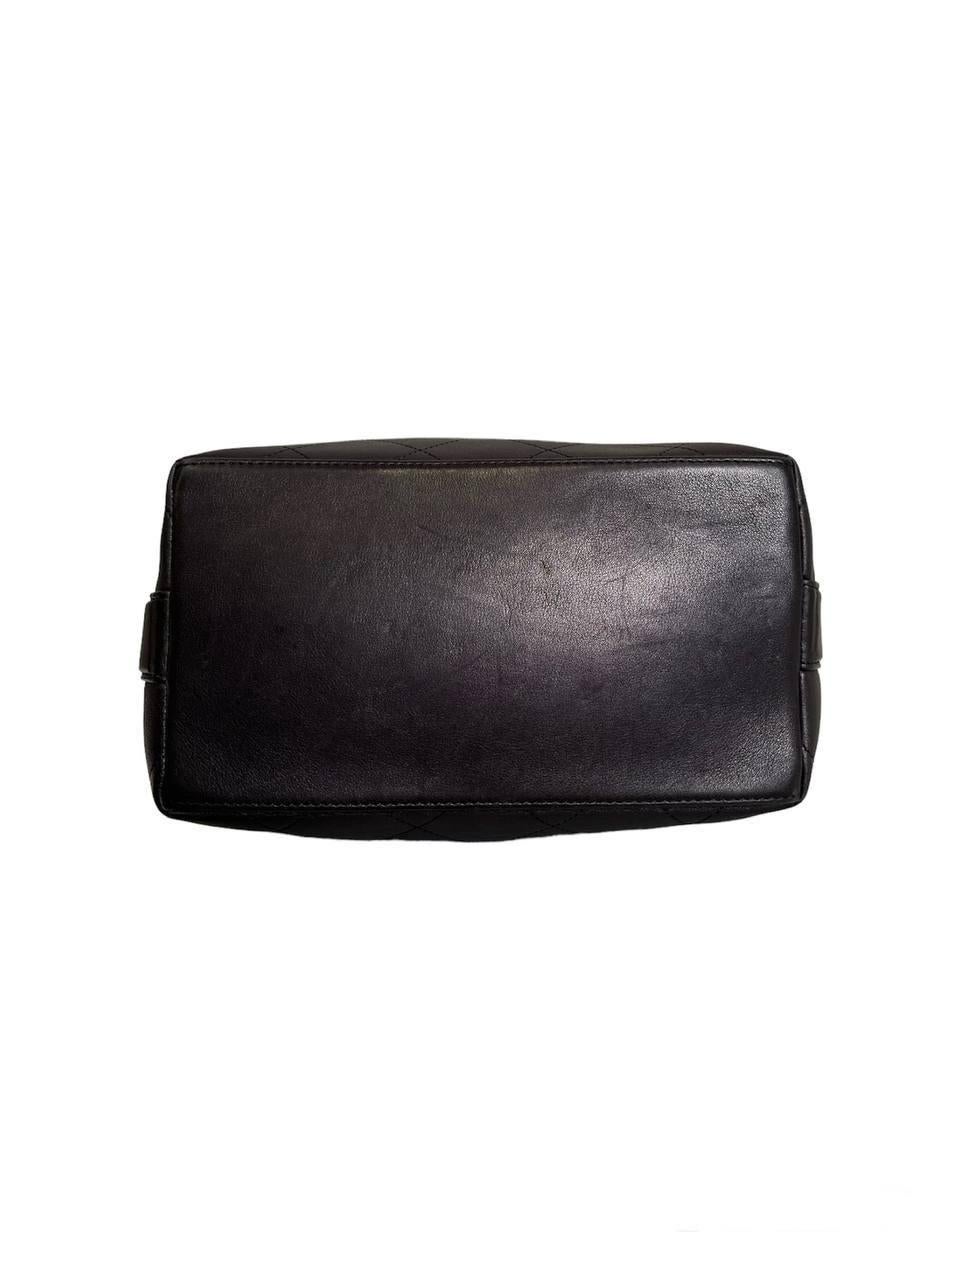 2016 Chanel Black Quilted Bucket Shoulder Bag For Sale 1